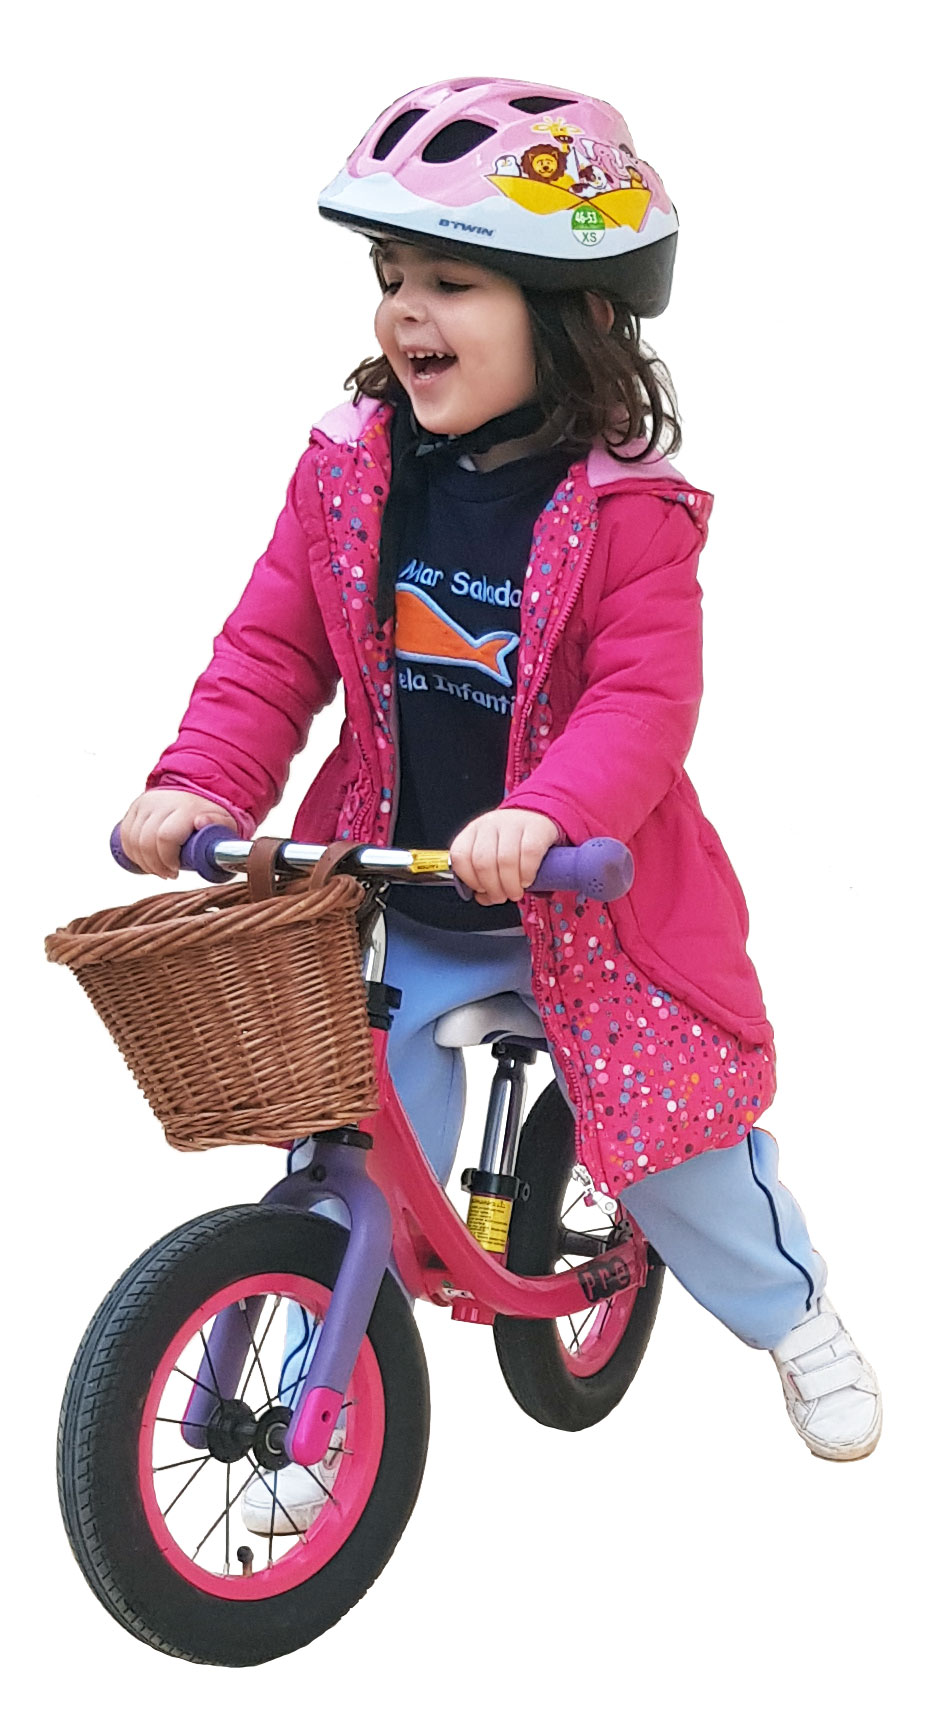 Cesta Bicicleta Niña, Cesta Bicicleta Infantil, UNOLIGA Cesta Delantera de  Bici para Niños, Canacesta Triciclo, Tejida a Mano, Apretada y Resistente